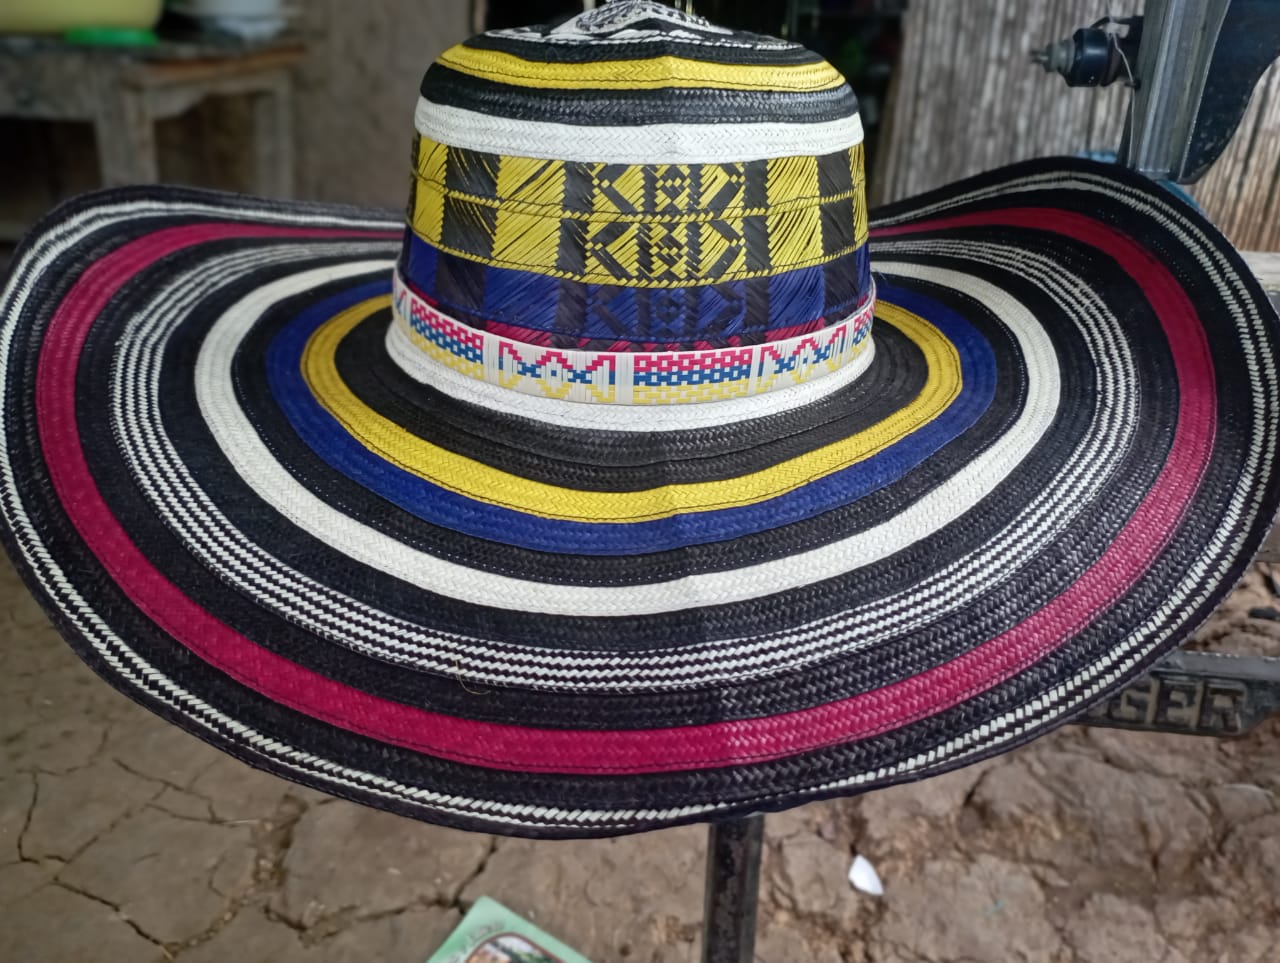 https://www.productosdecolombia.com/media/micrositios/sombreros-colombianos-hats/sombrero-colombiano-machimbreado-tricolor-17vueltasb.jpeg